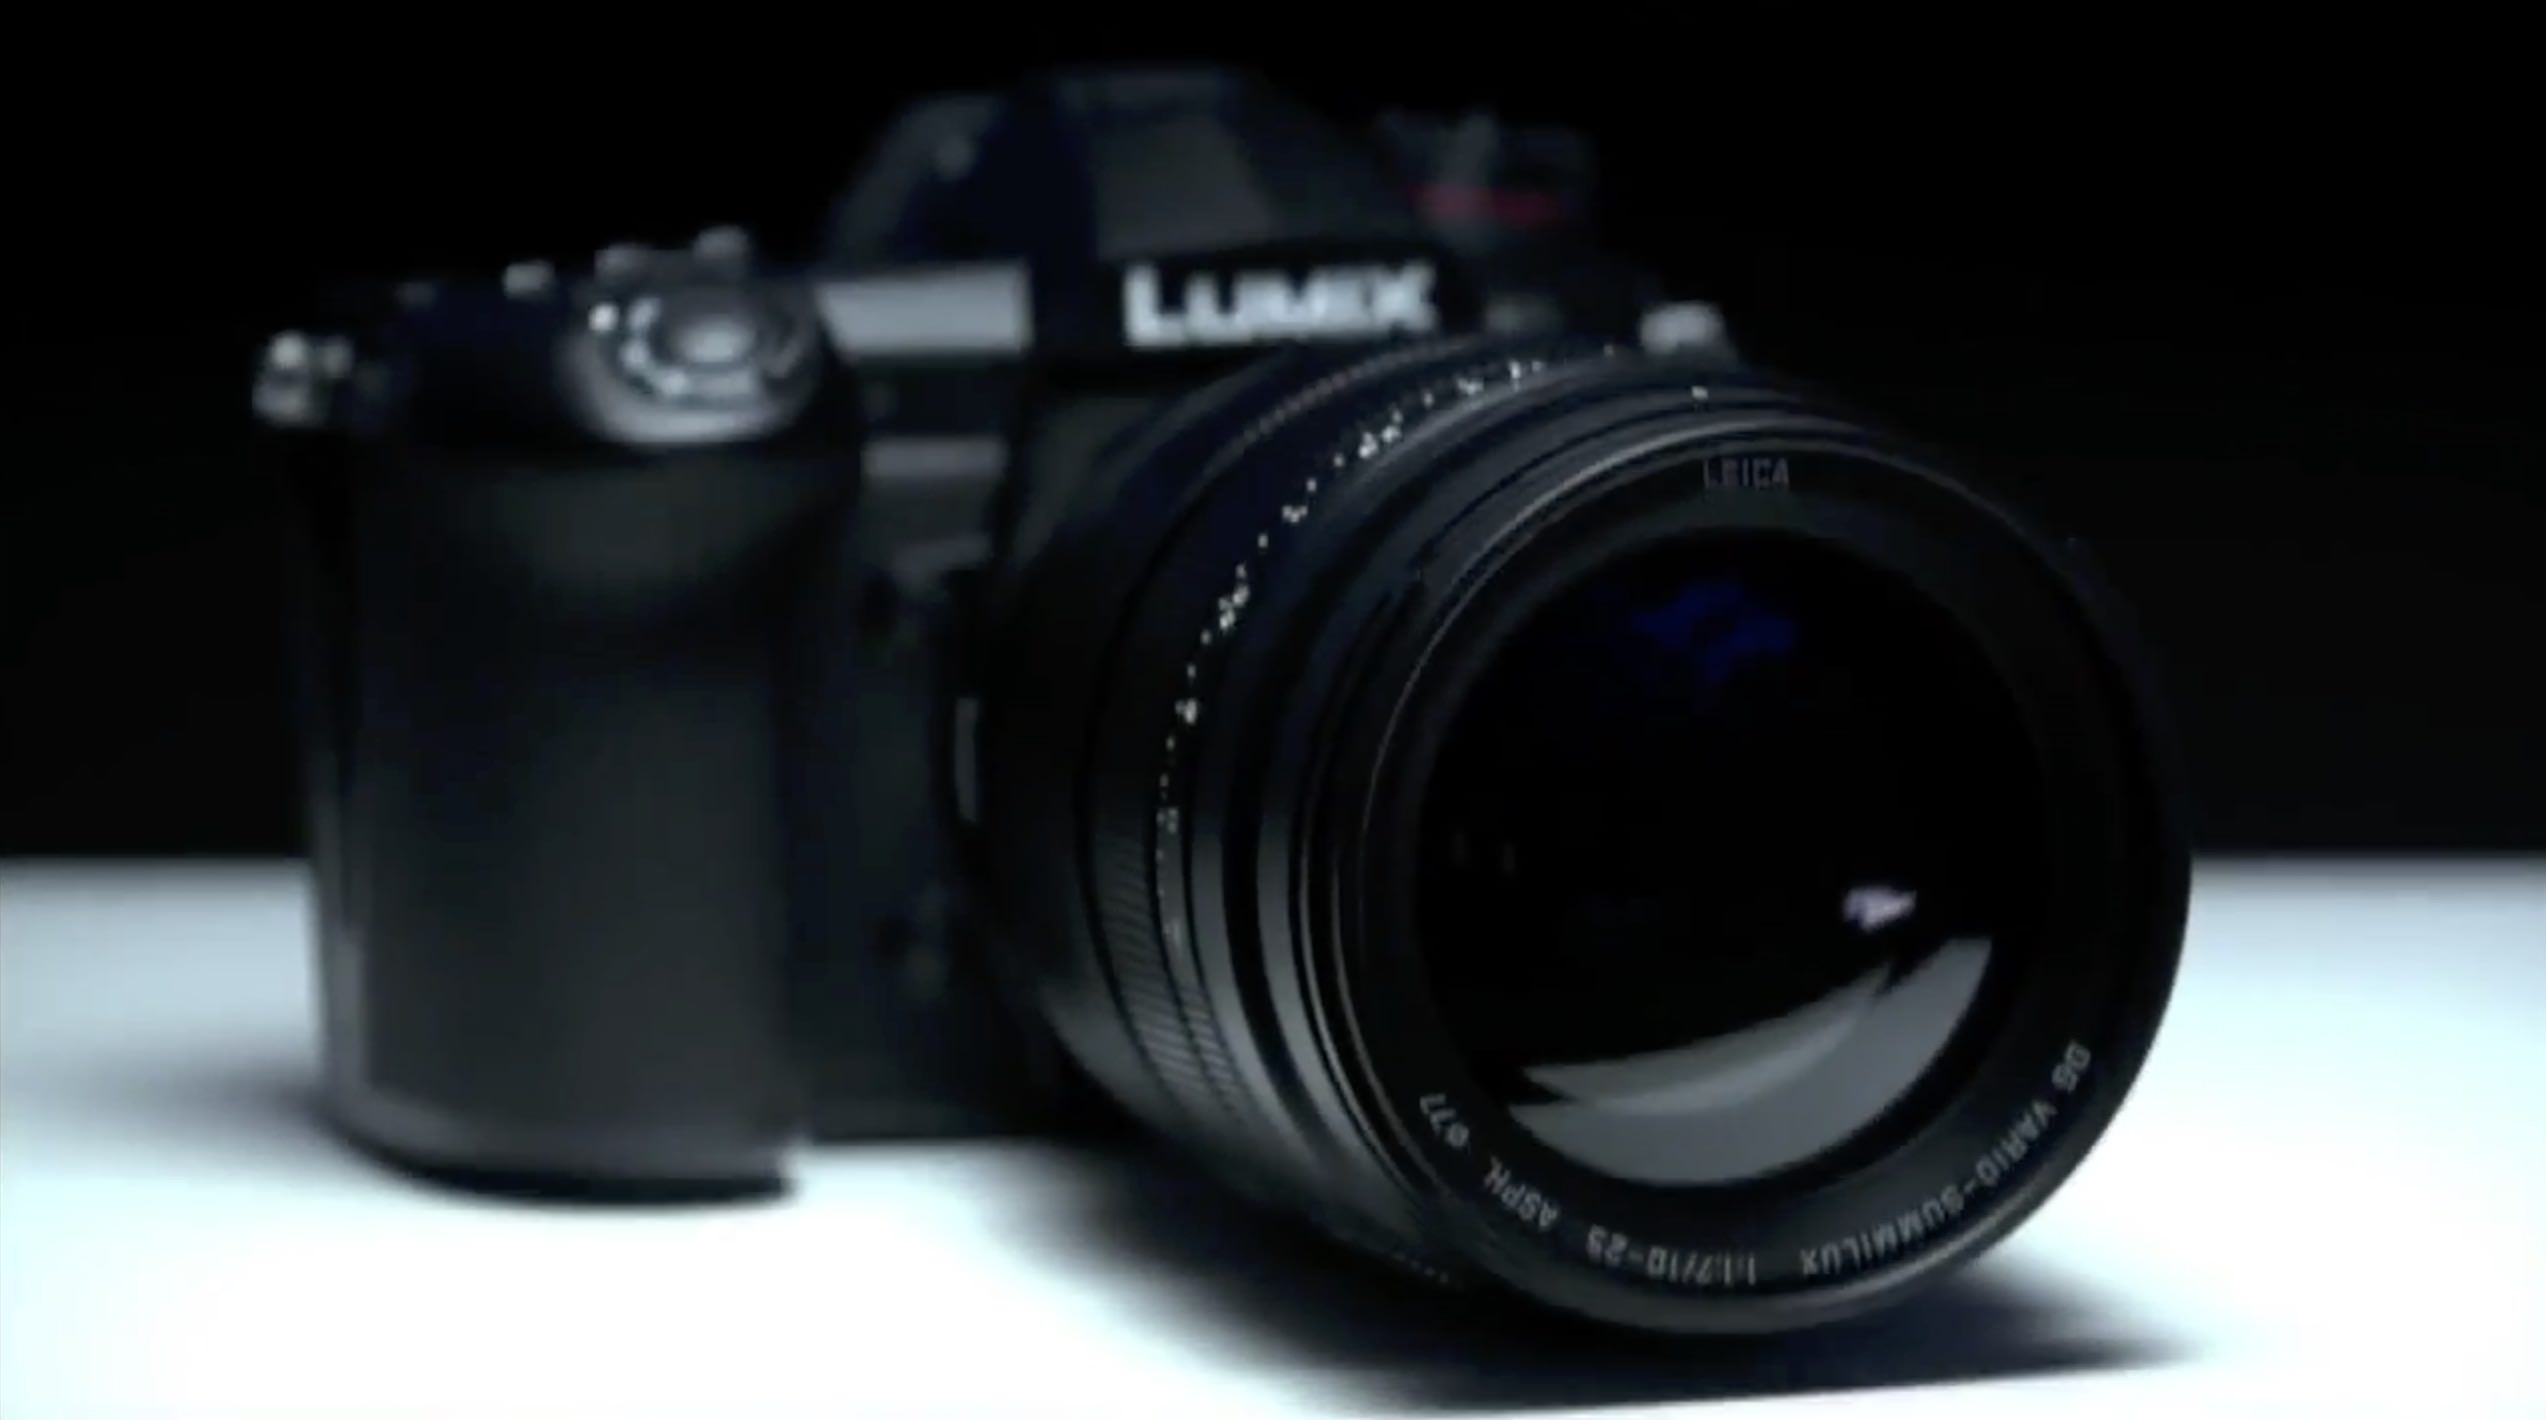 Panasonic Leica DG Vario-Summilux 10-25mm f/1.7 lens